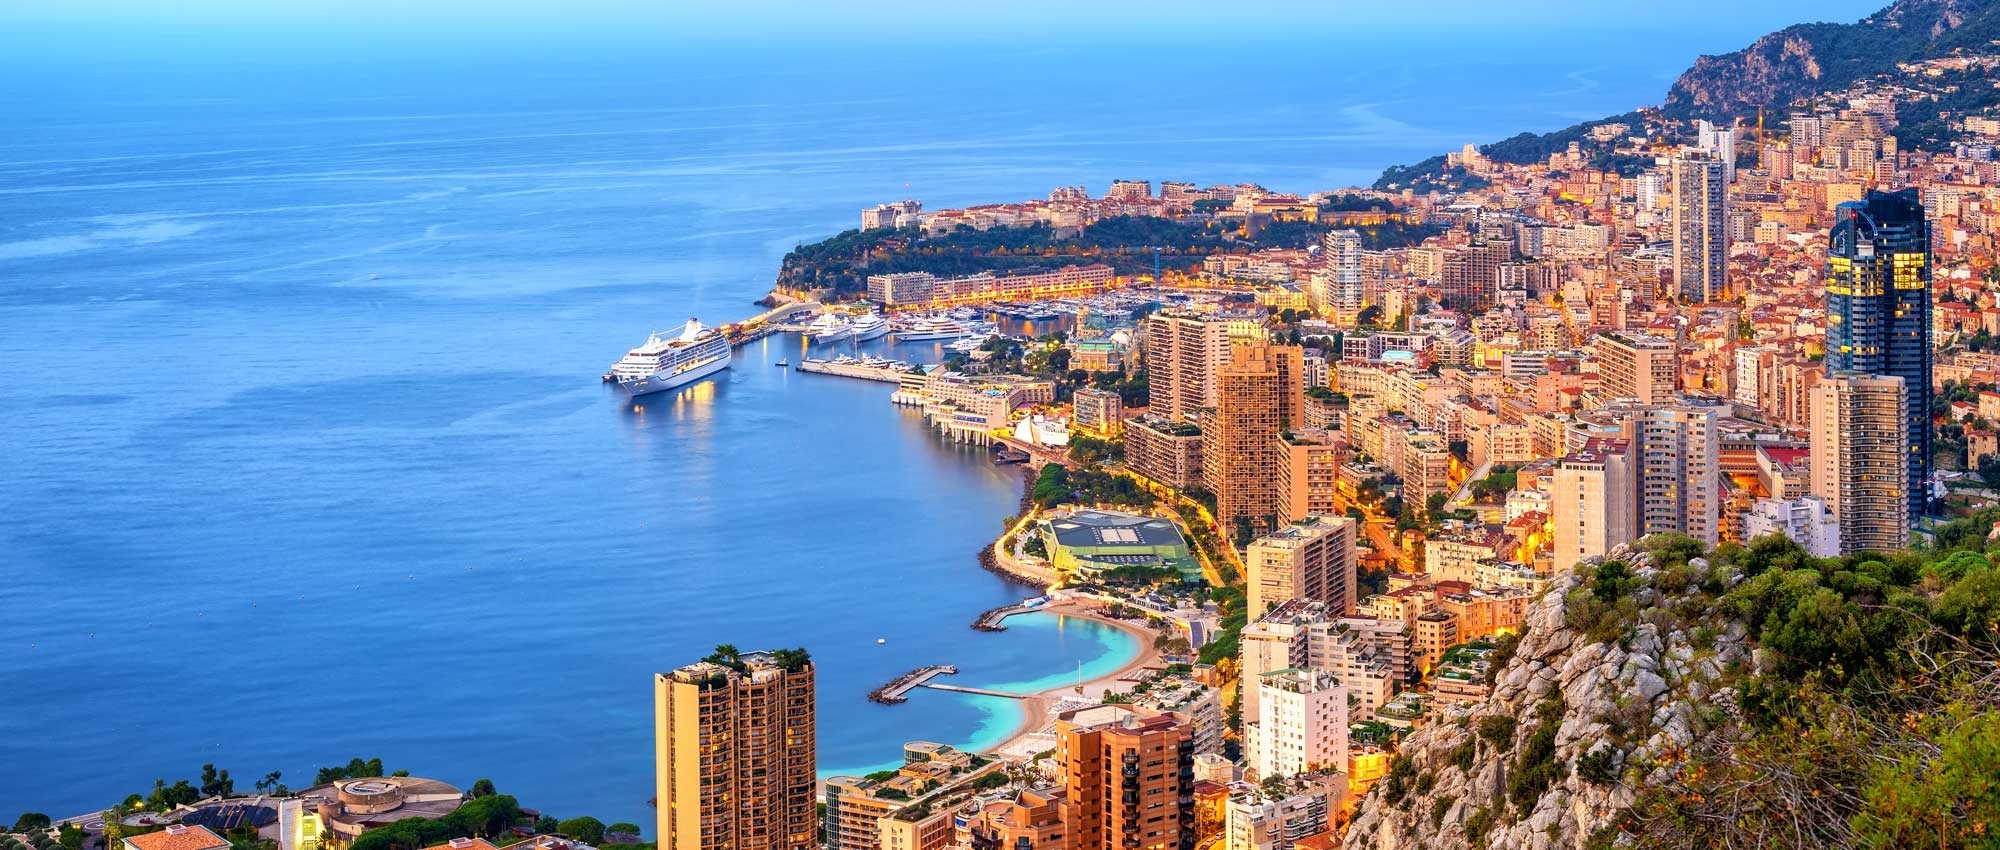 Noleggio Infiniti a Monaco